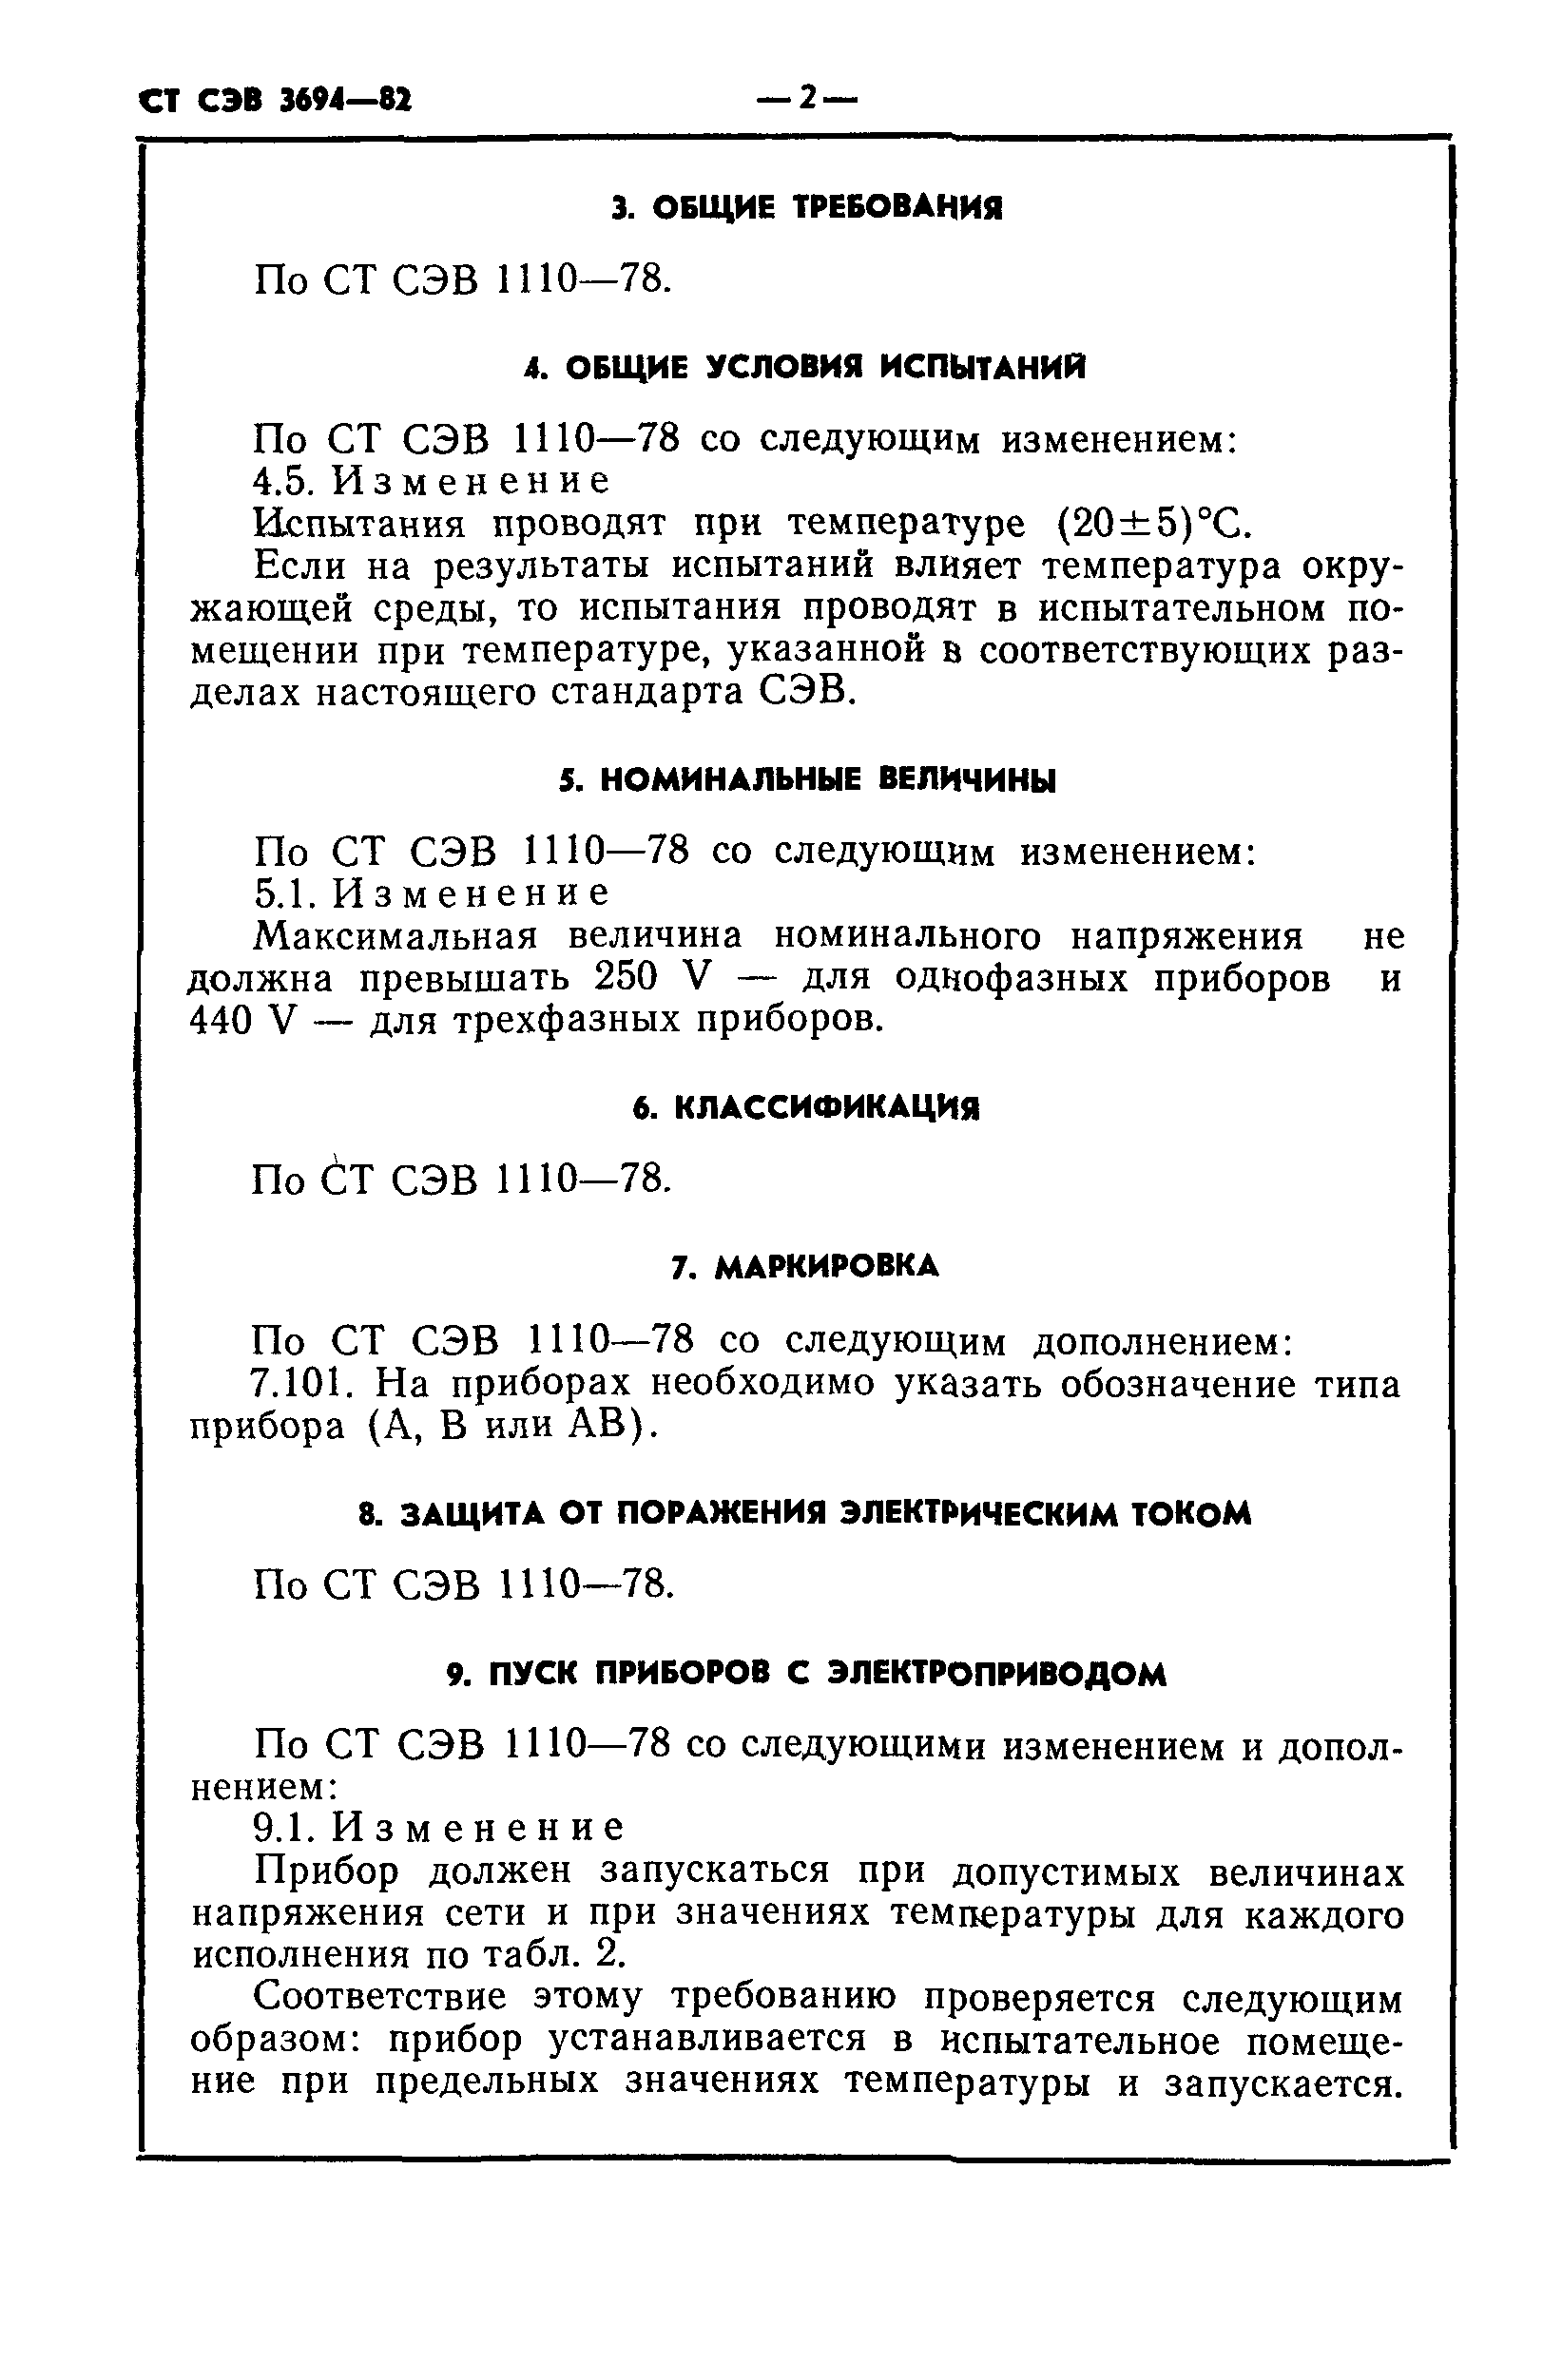 СТ СЭВ 3694-82